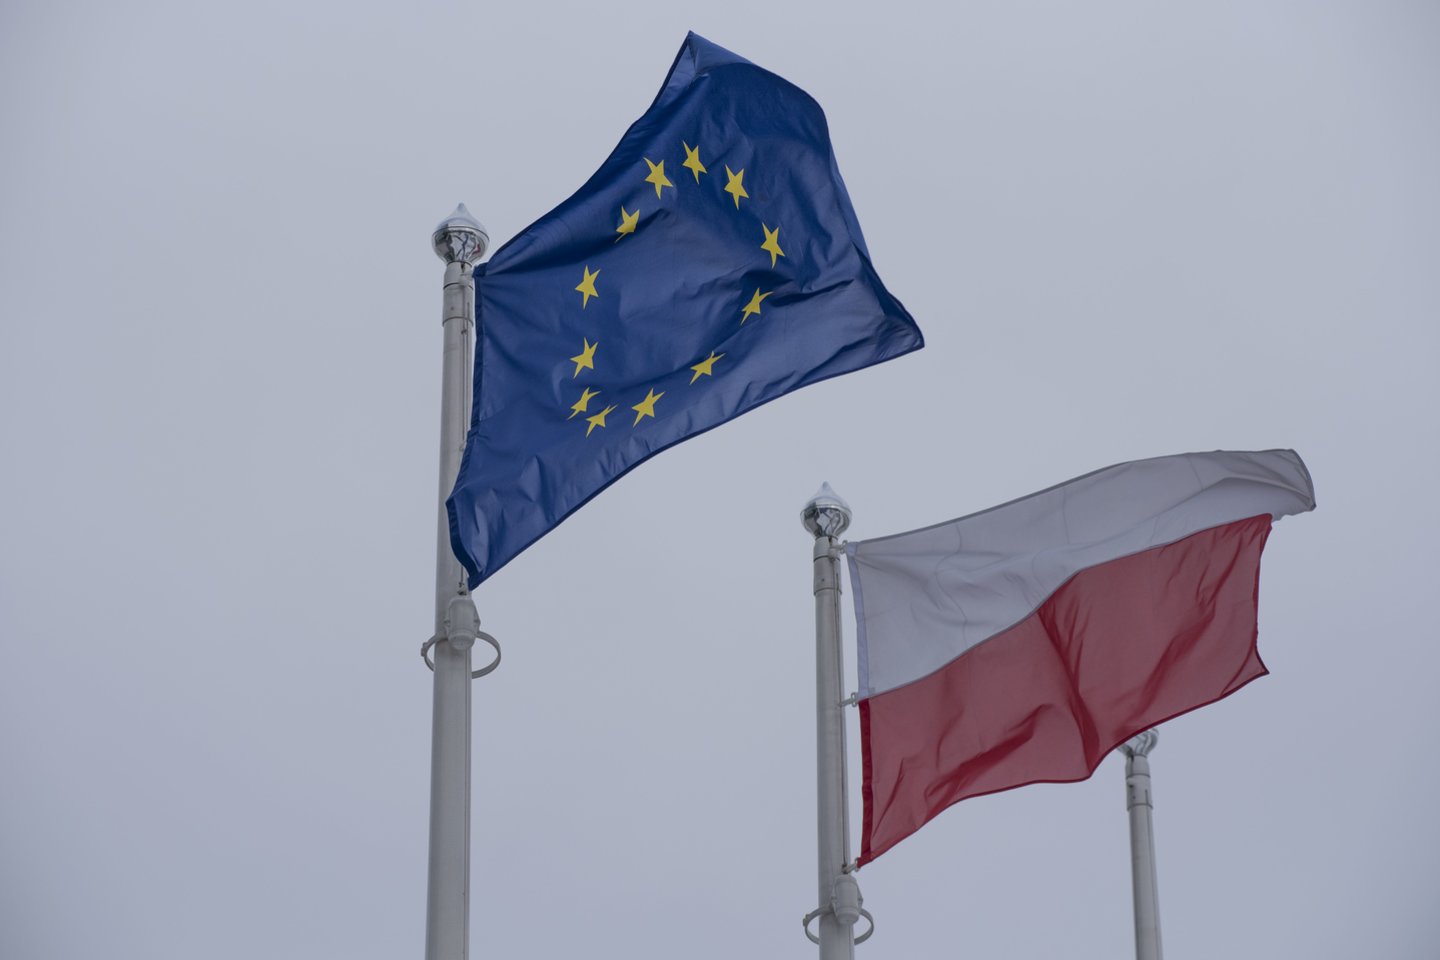 ES skundžia teismui Lenkiją dėl teismų nepriklausomumą galimai pažeidžiančio įstatymo.  <br>ZUMA Press/Scanpix nuotr.